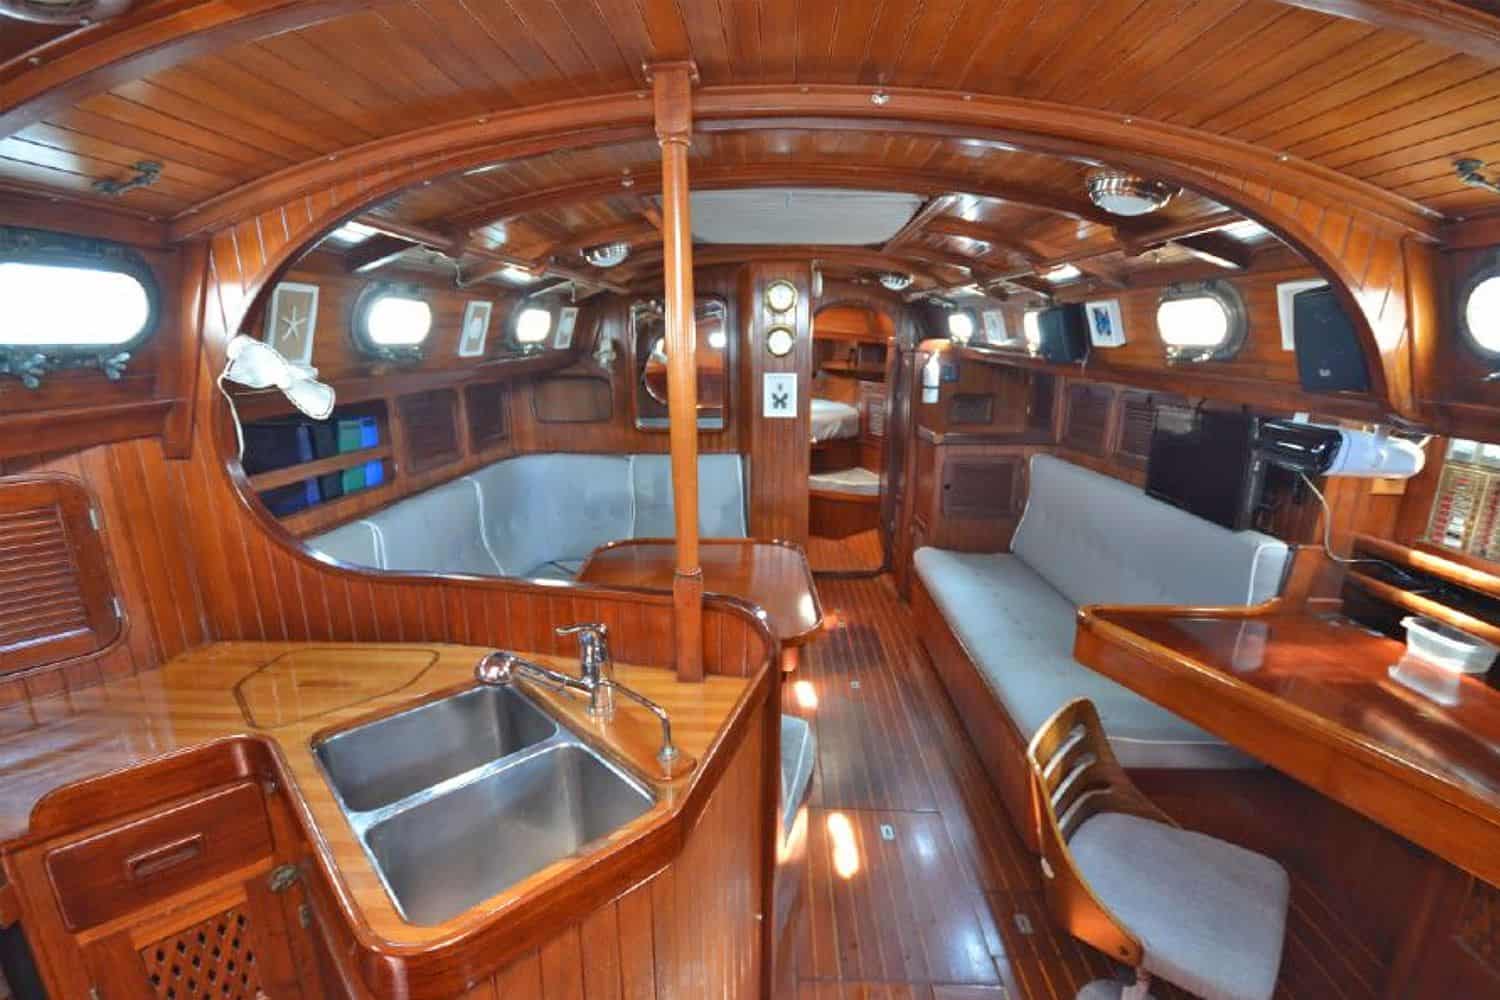 40 Boat cabin interiors ideas  boat interior design sailboat interior  boat interior